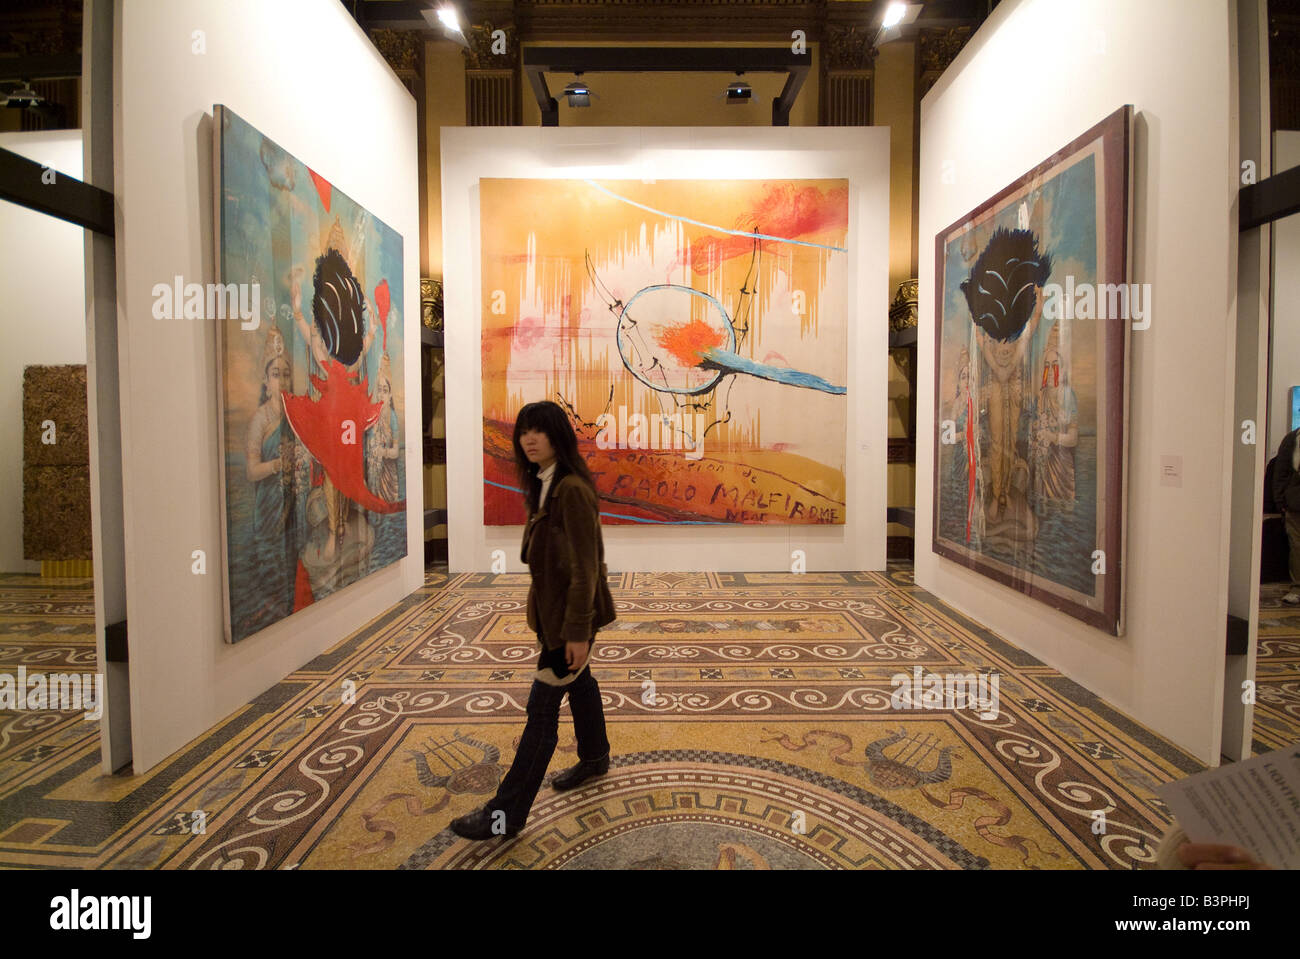 Obra de Arte Shnabel Palazzo Wedekind (Rama del periódico Il Tempo), la Feria de Arte Contemporáneo de Roma, Roma, Lazio, Italia Foto de stock